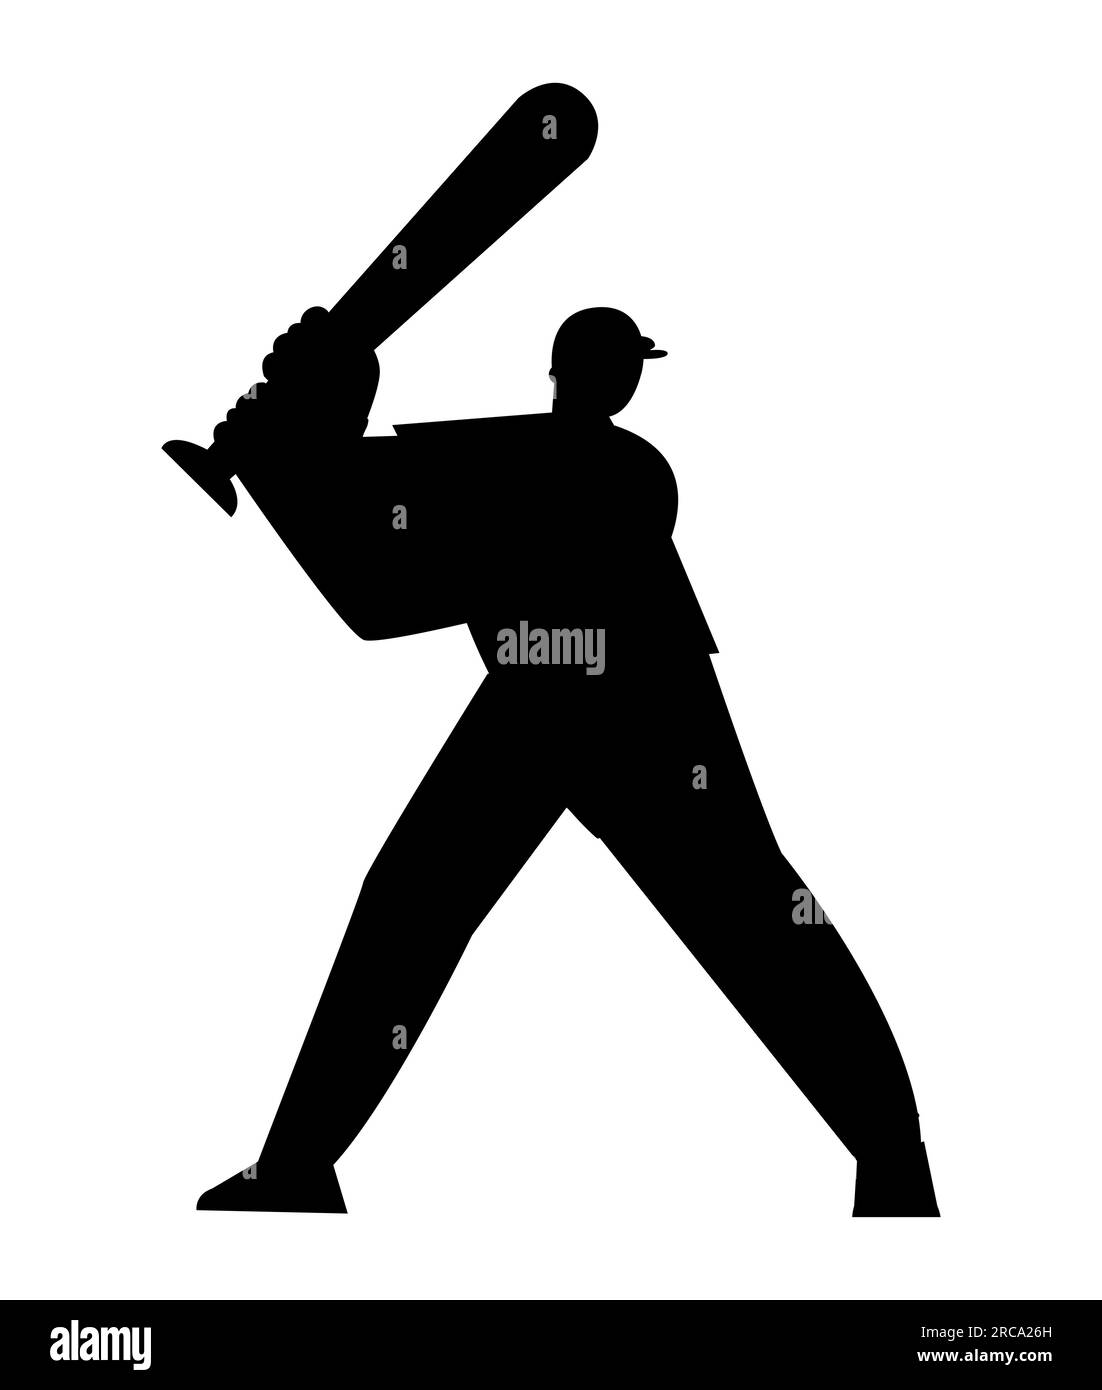 Silhouette noire d'un joueur de baseball frappant la balle, sports d'été, jeu d'équipe, vecteur isolé sur fond blanc Illustration de Vecteur